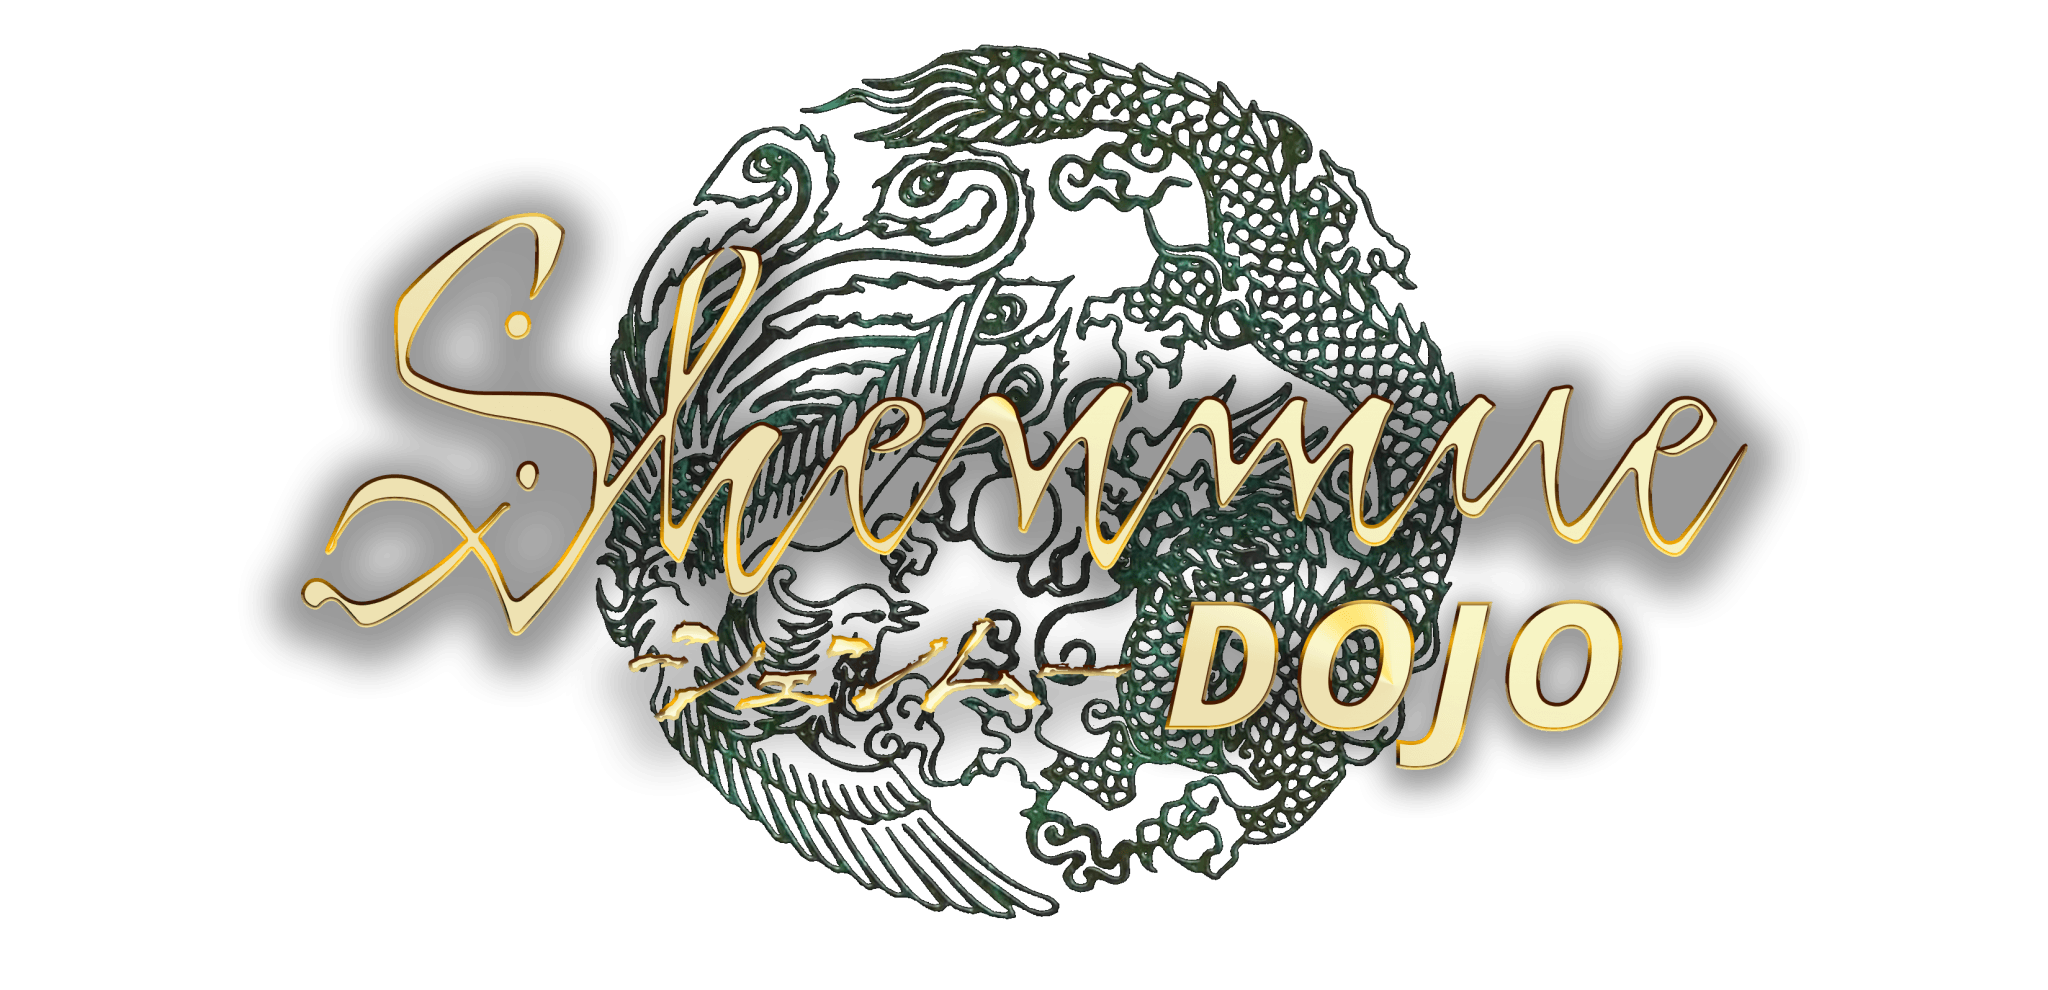 Shenmue Dojo